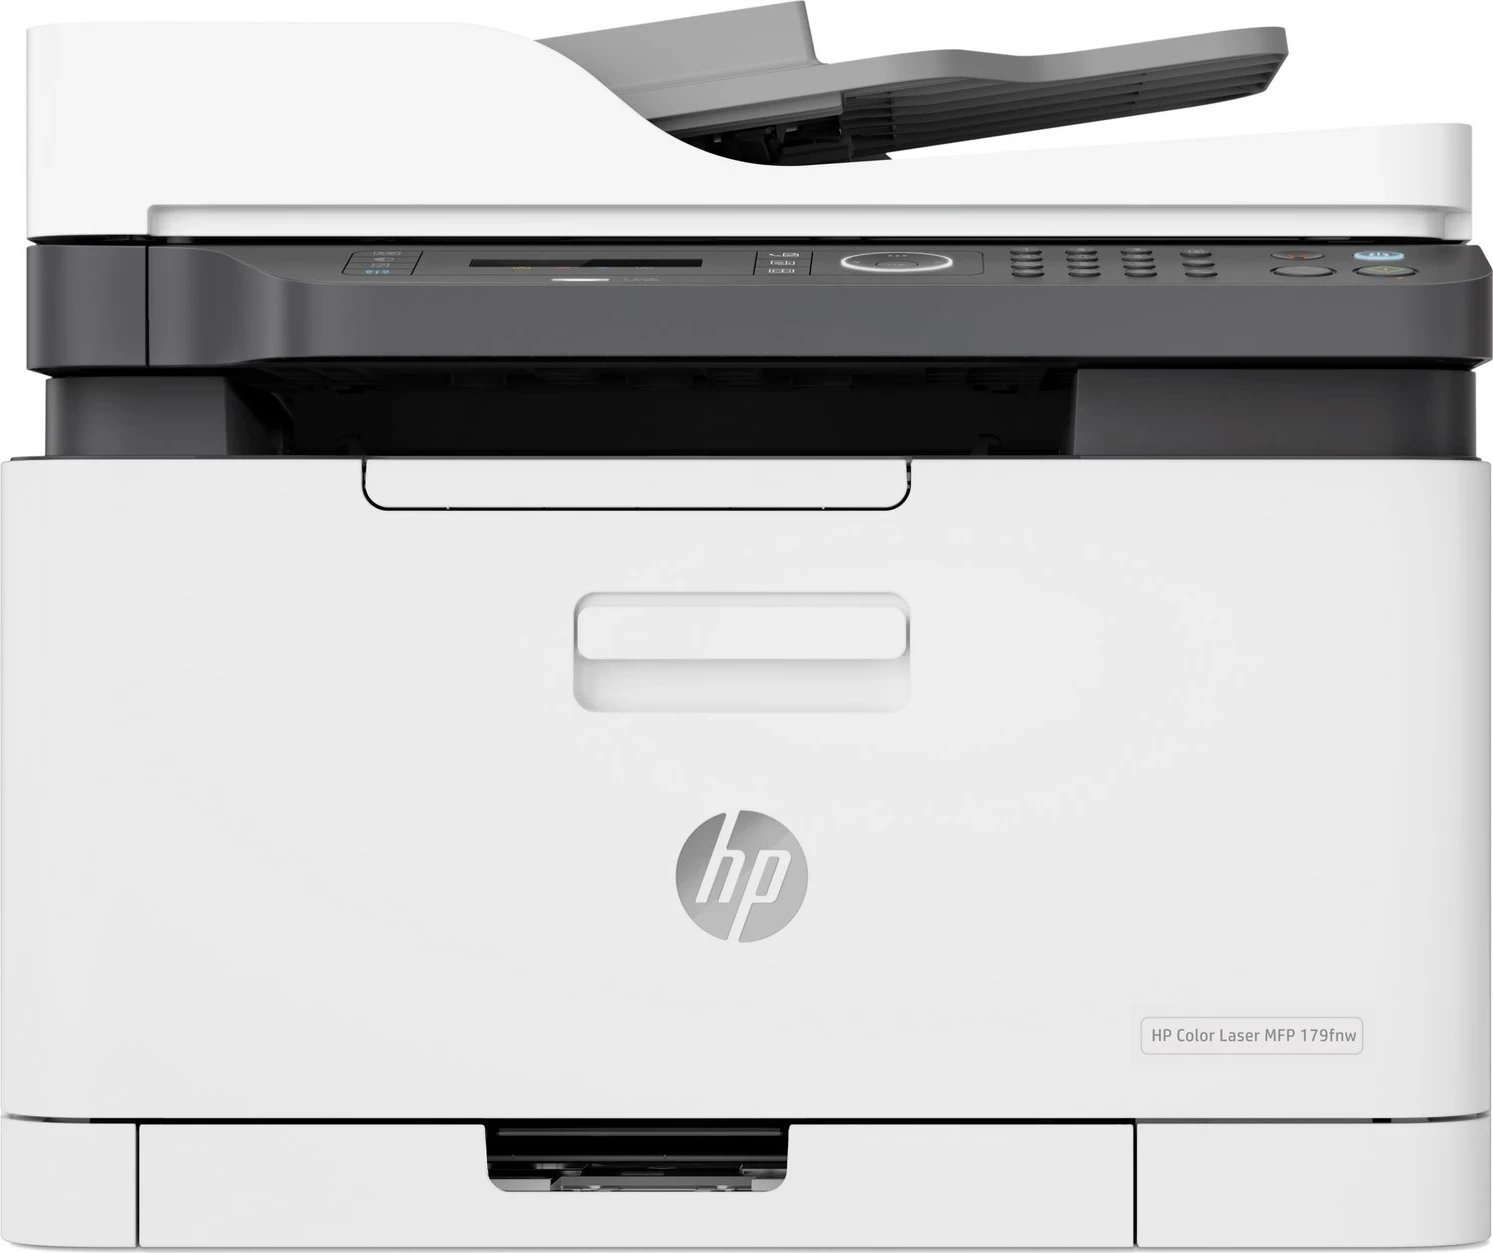 Printer HP Color Laser MFP 179fnw ADF